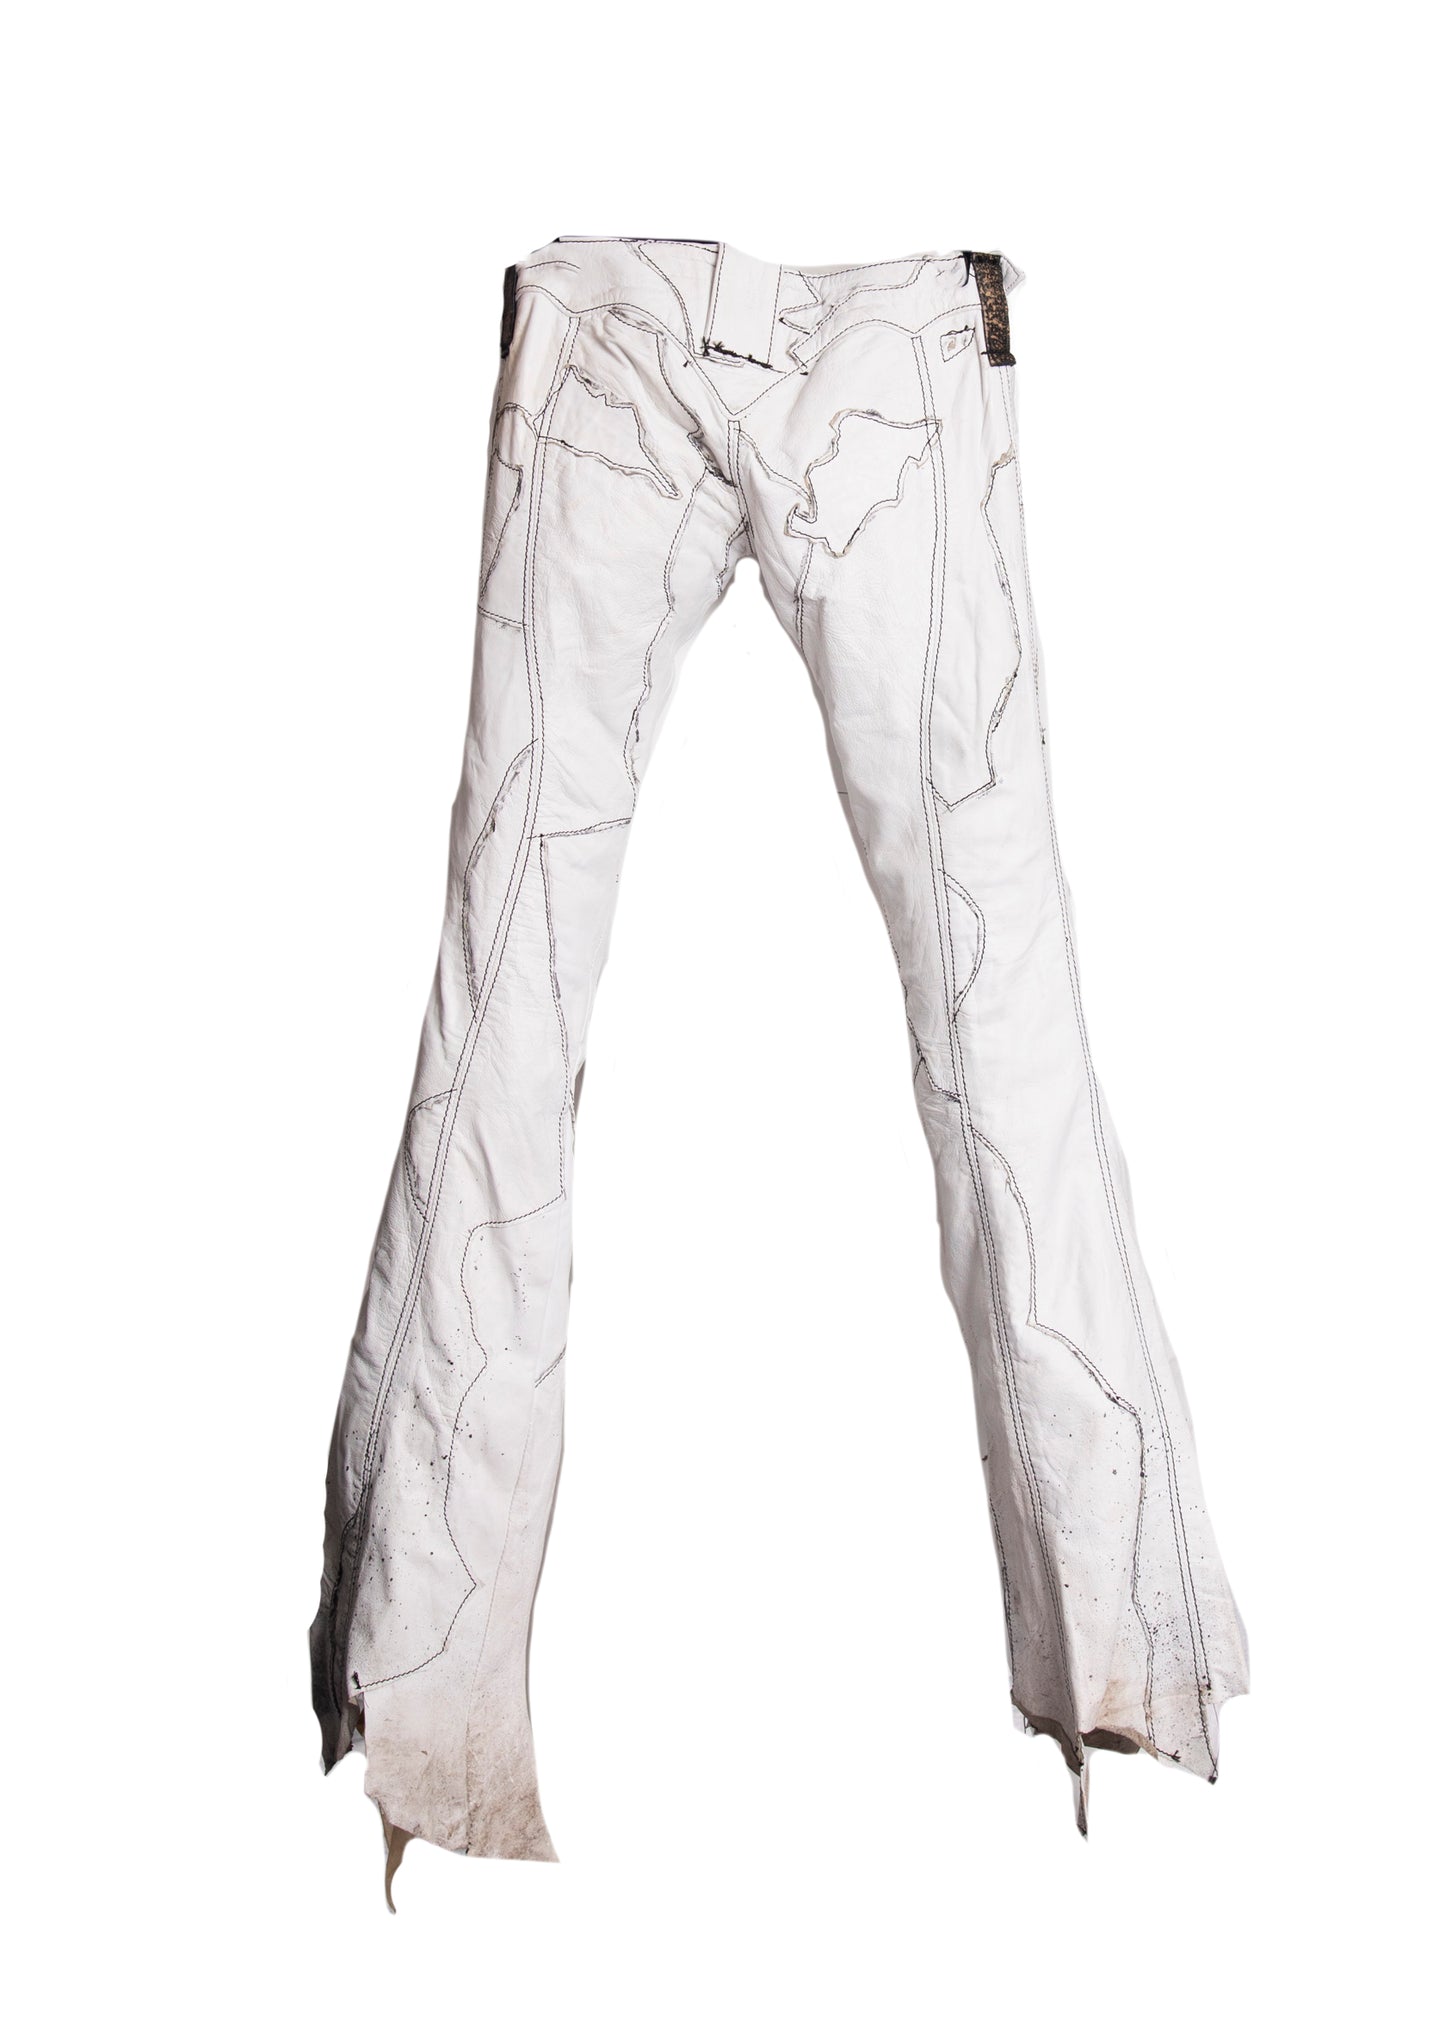 Steven Tyler White Leather Pants S